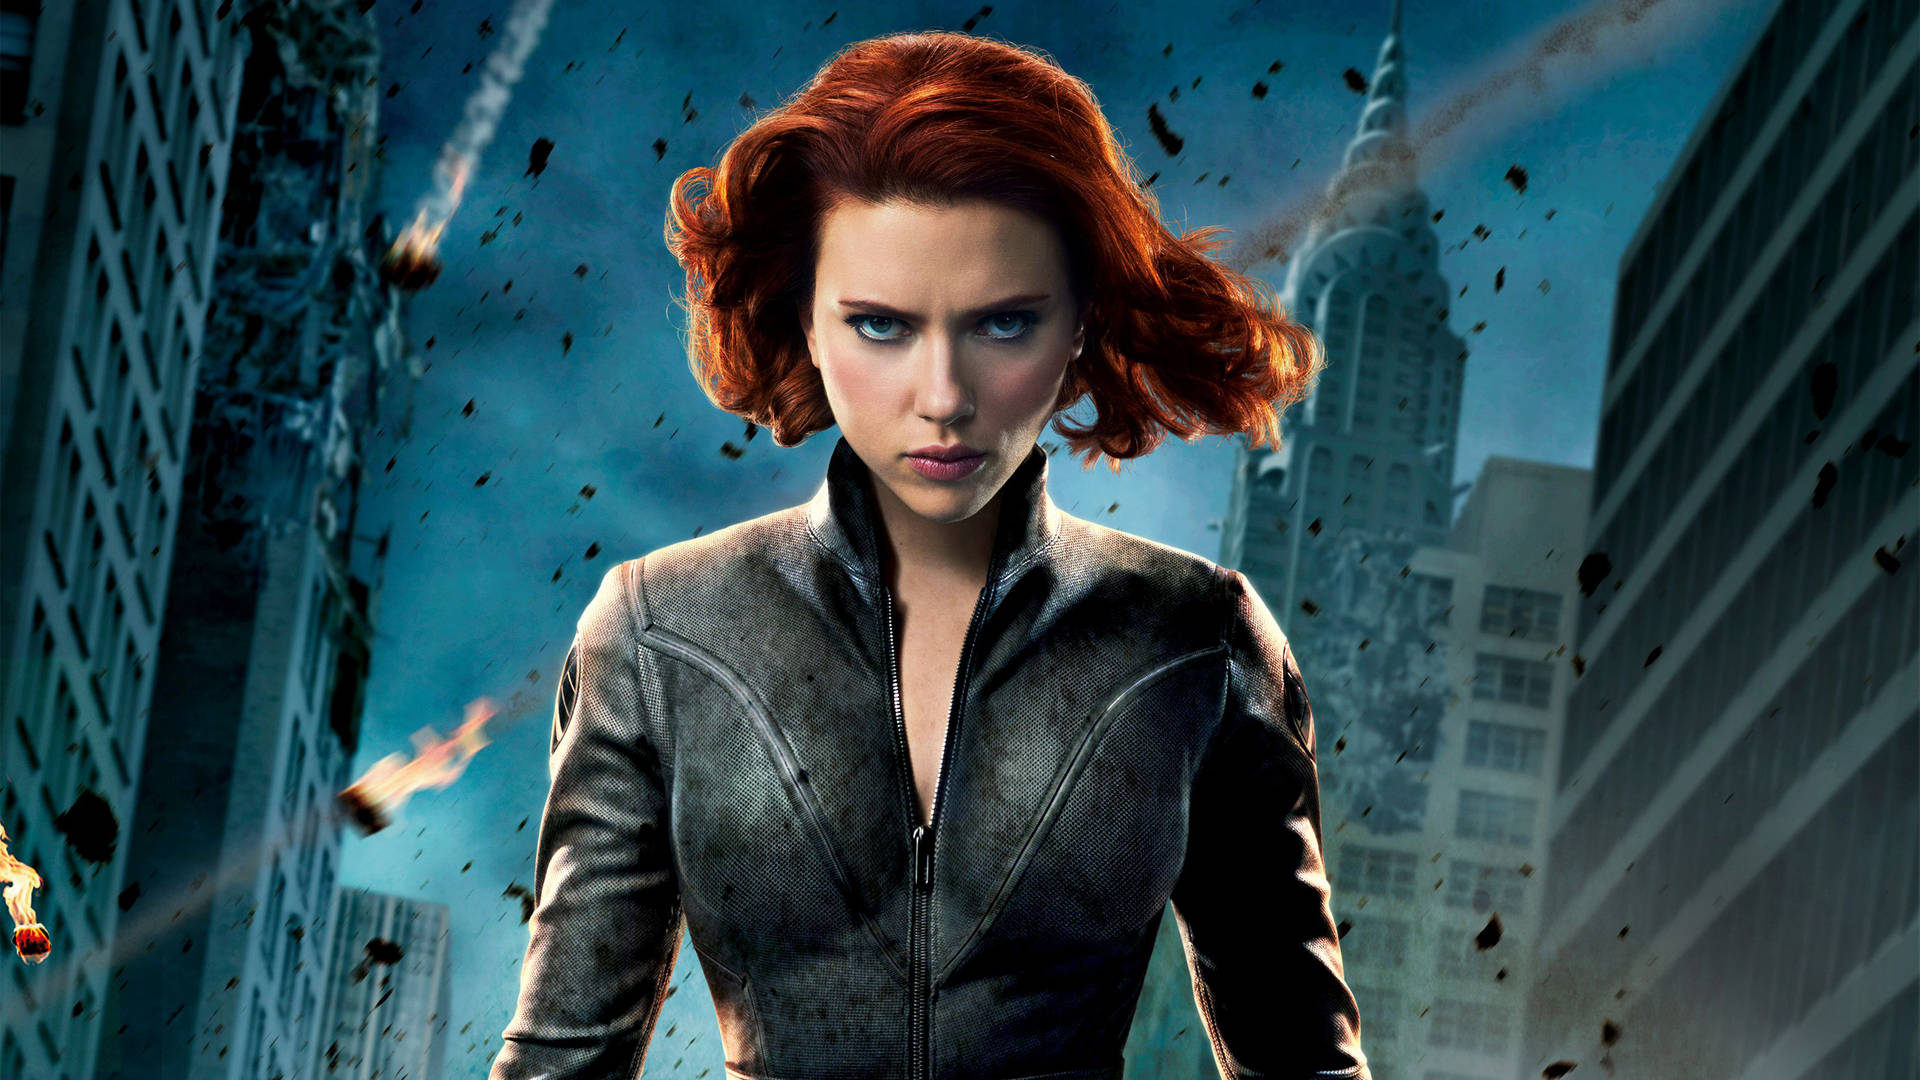 Scarlettjohansson Como Black Widow, La Poderosa Superheroína De Marvel. Fondo de pantalla